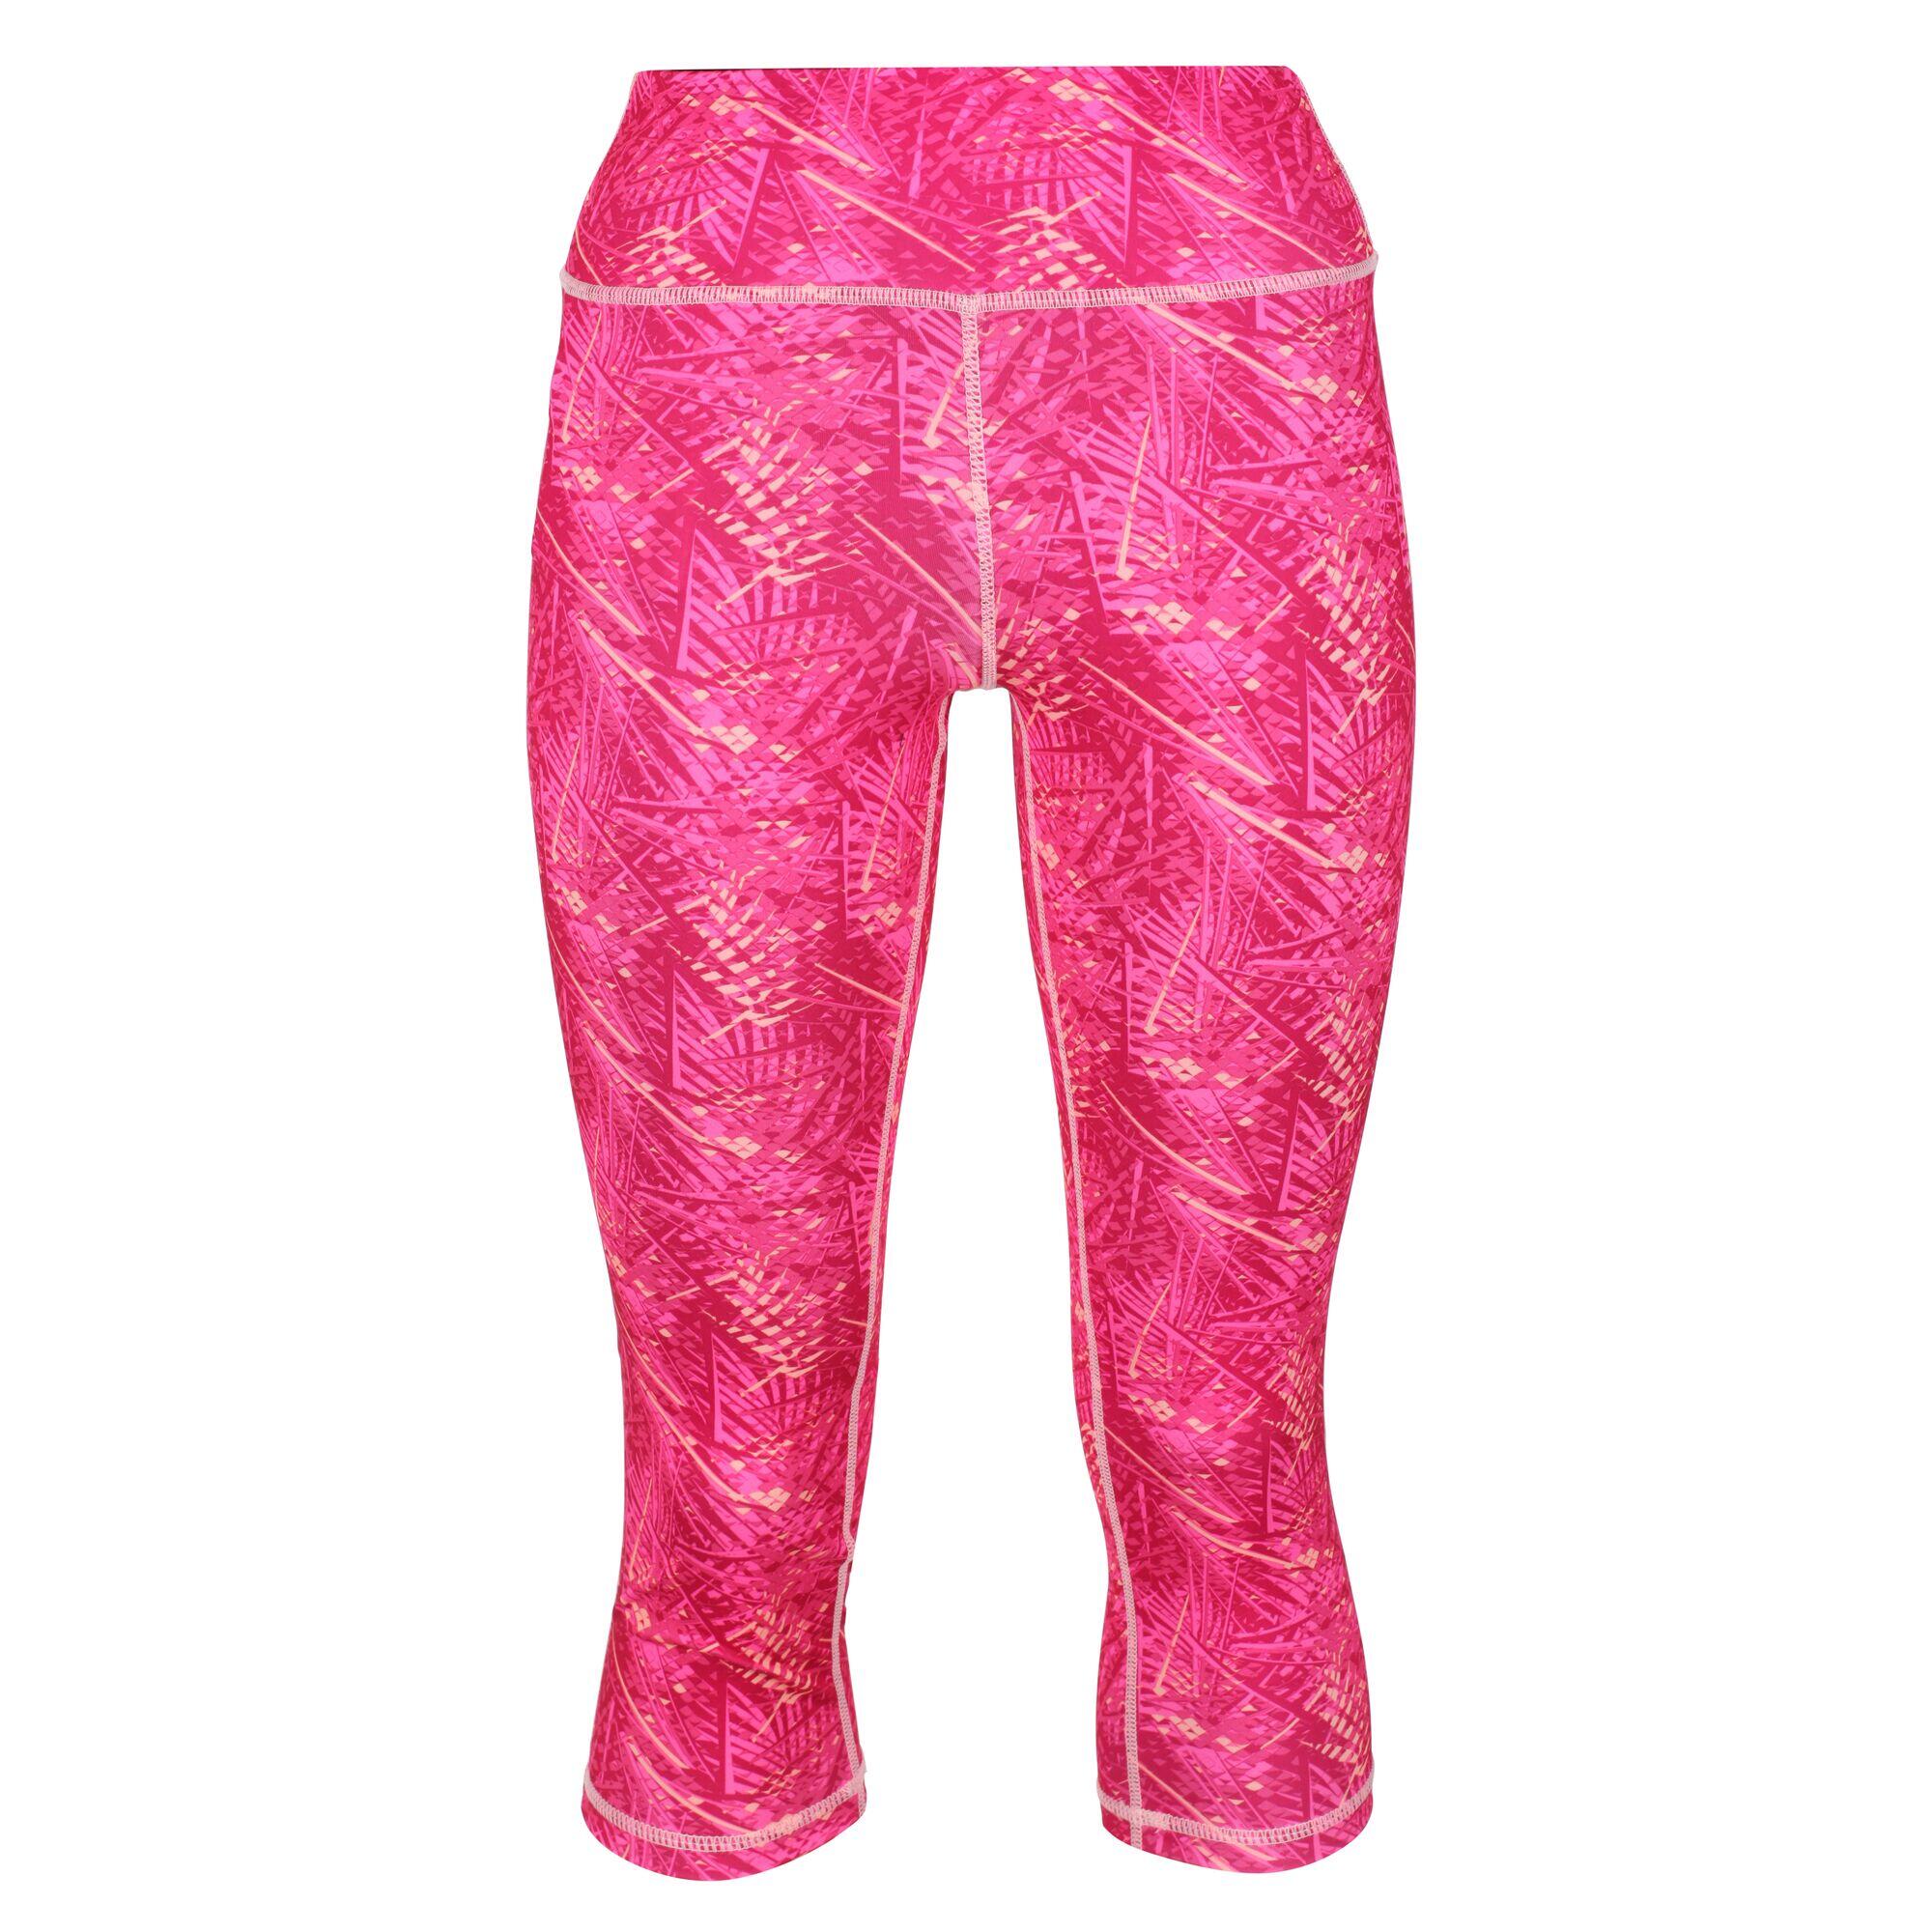 REGATTA Womens/Ladies Pincha 3/4 Leggings (Hot Pink Print)